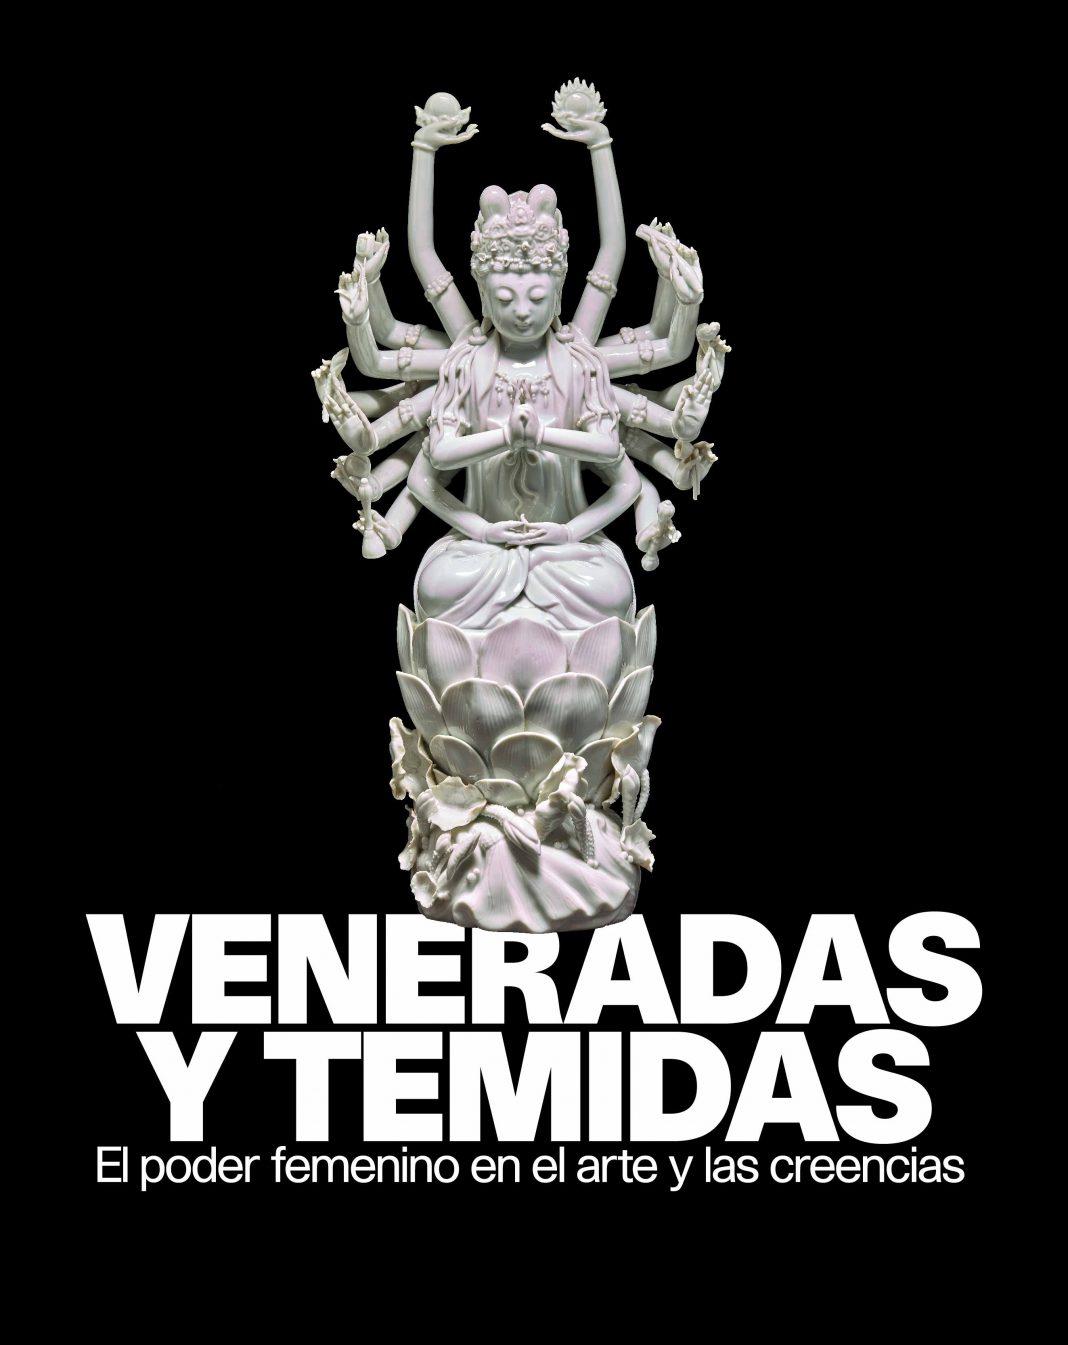 Veneradas y temidas. El poder femenino en el arte y las creenciashttps://www.exibart.es/repository/media/formidable/11/img/361/VeneradasTemudas_cartel_desktop_es_v2-1068x1345.jpg